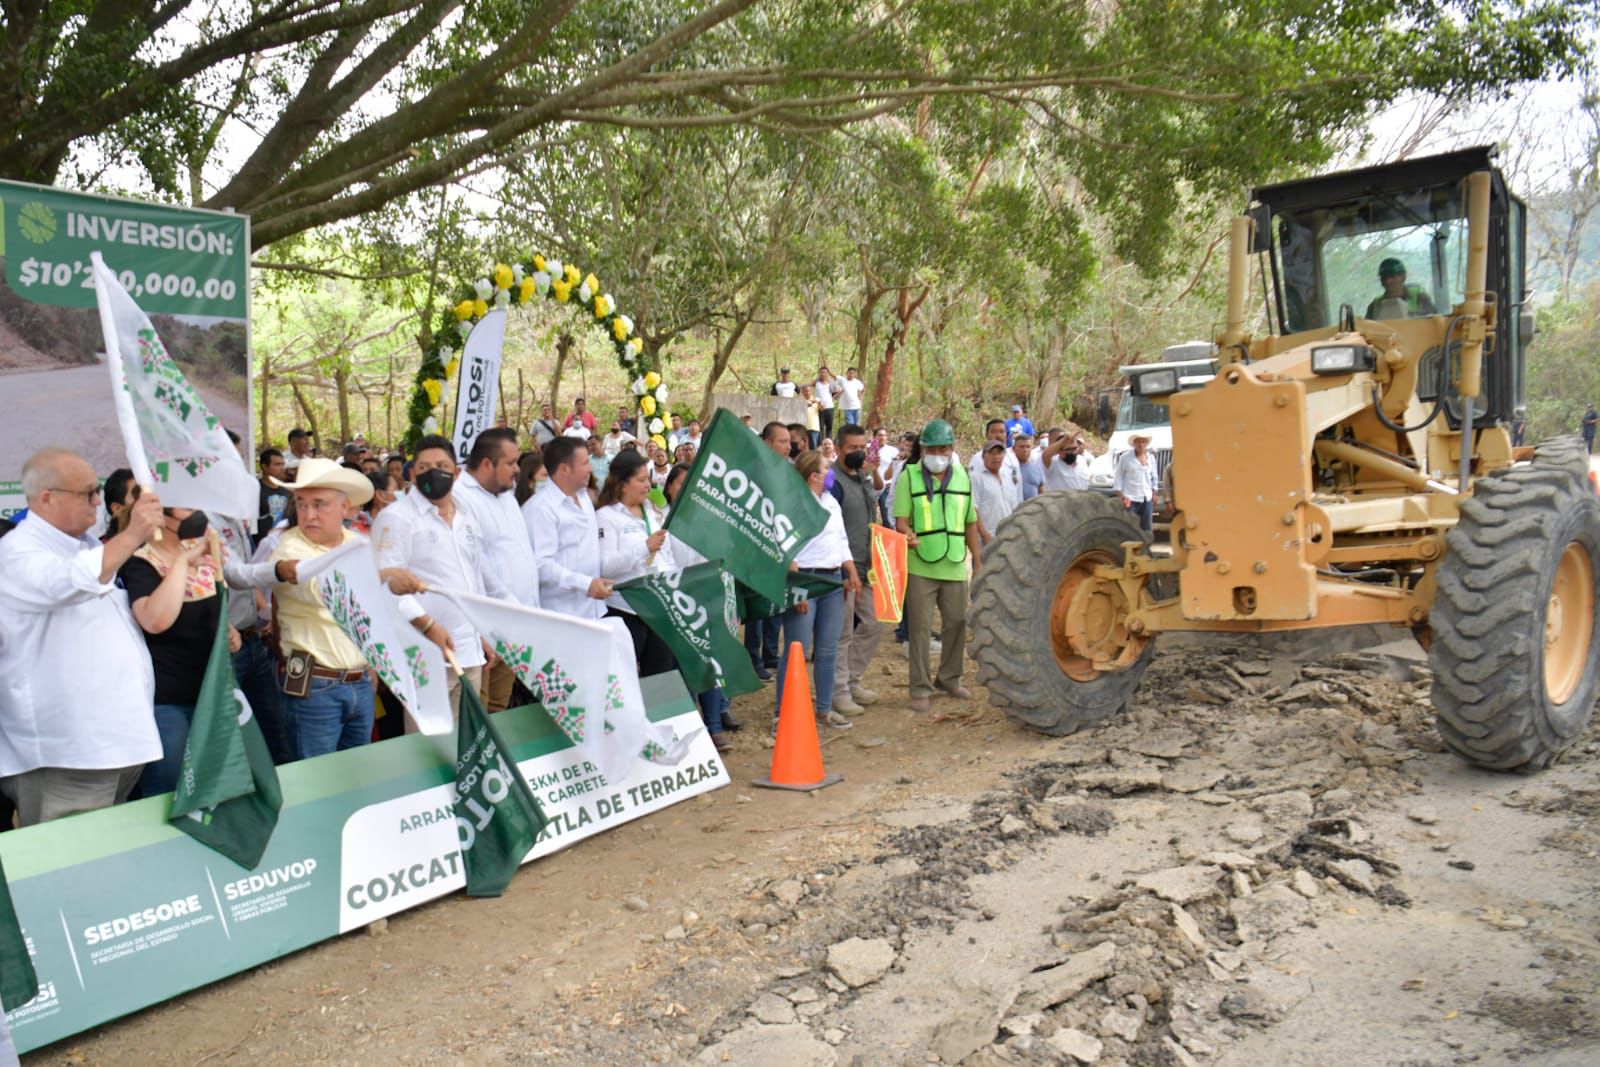 Anuncia Ricardo Gallardo reconstrucción de carretera Coxcatlán-Axtla de Terrazas 